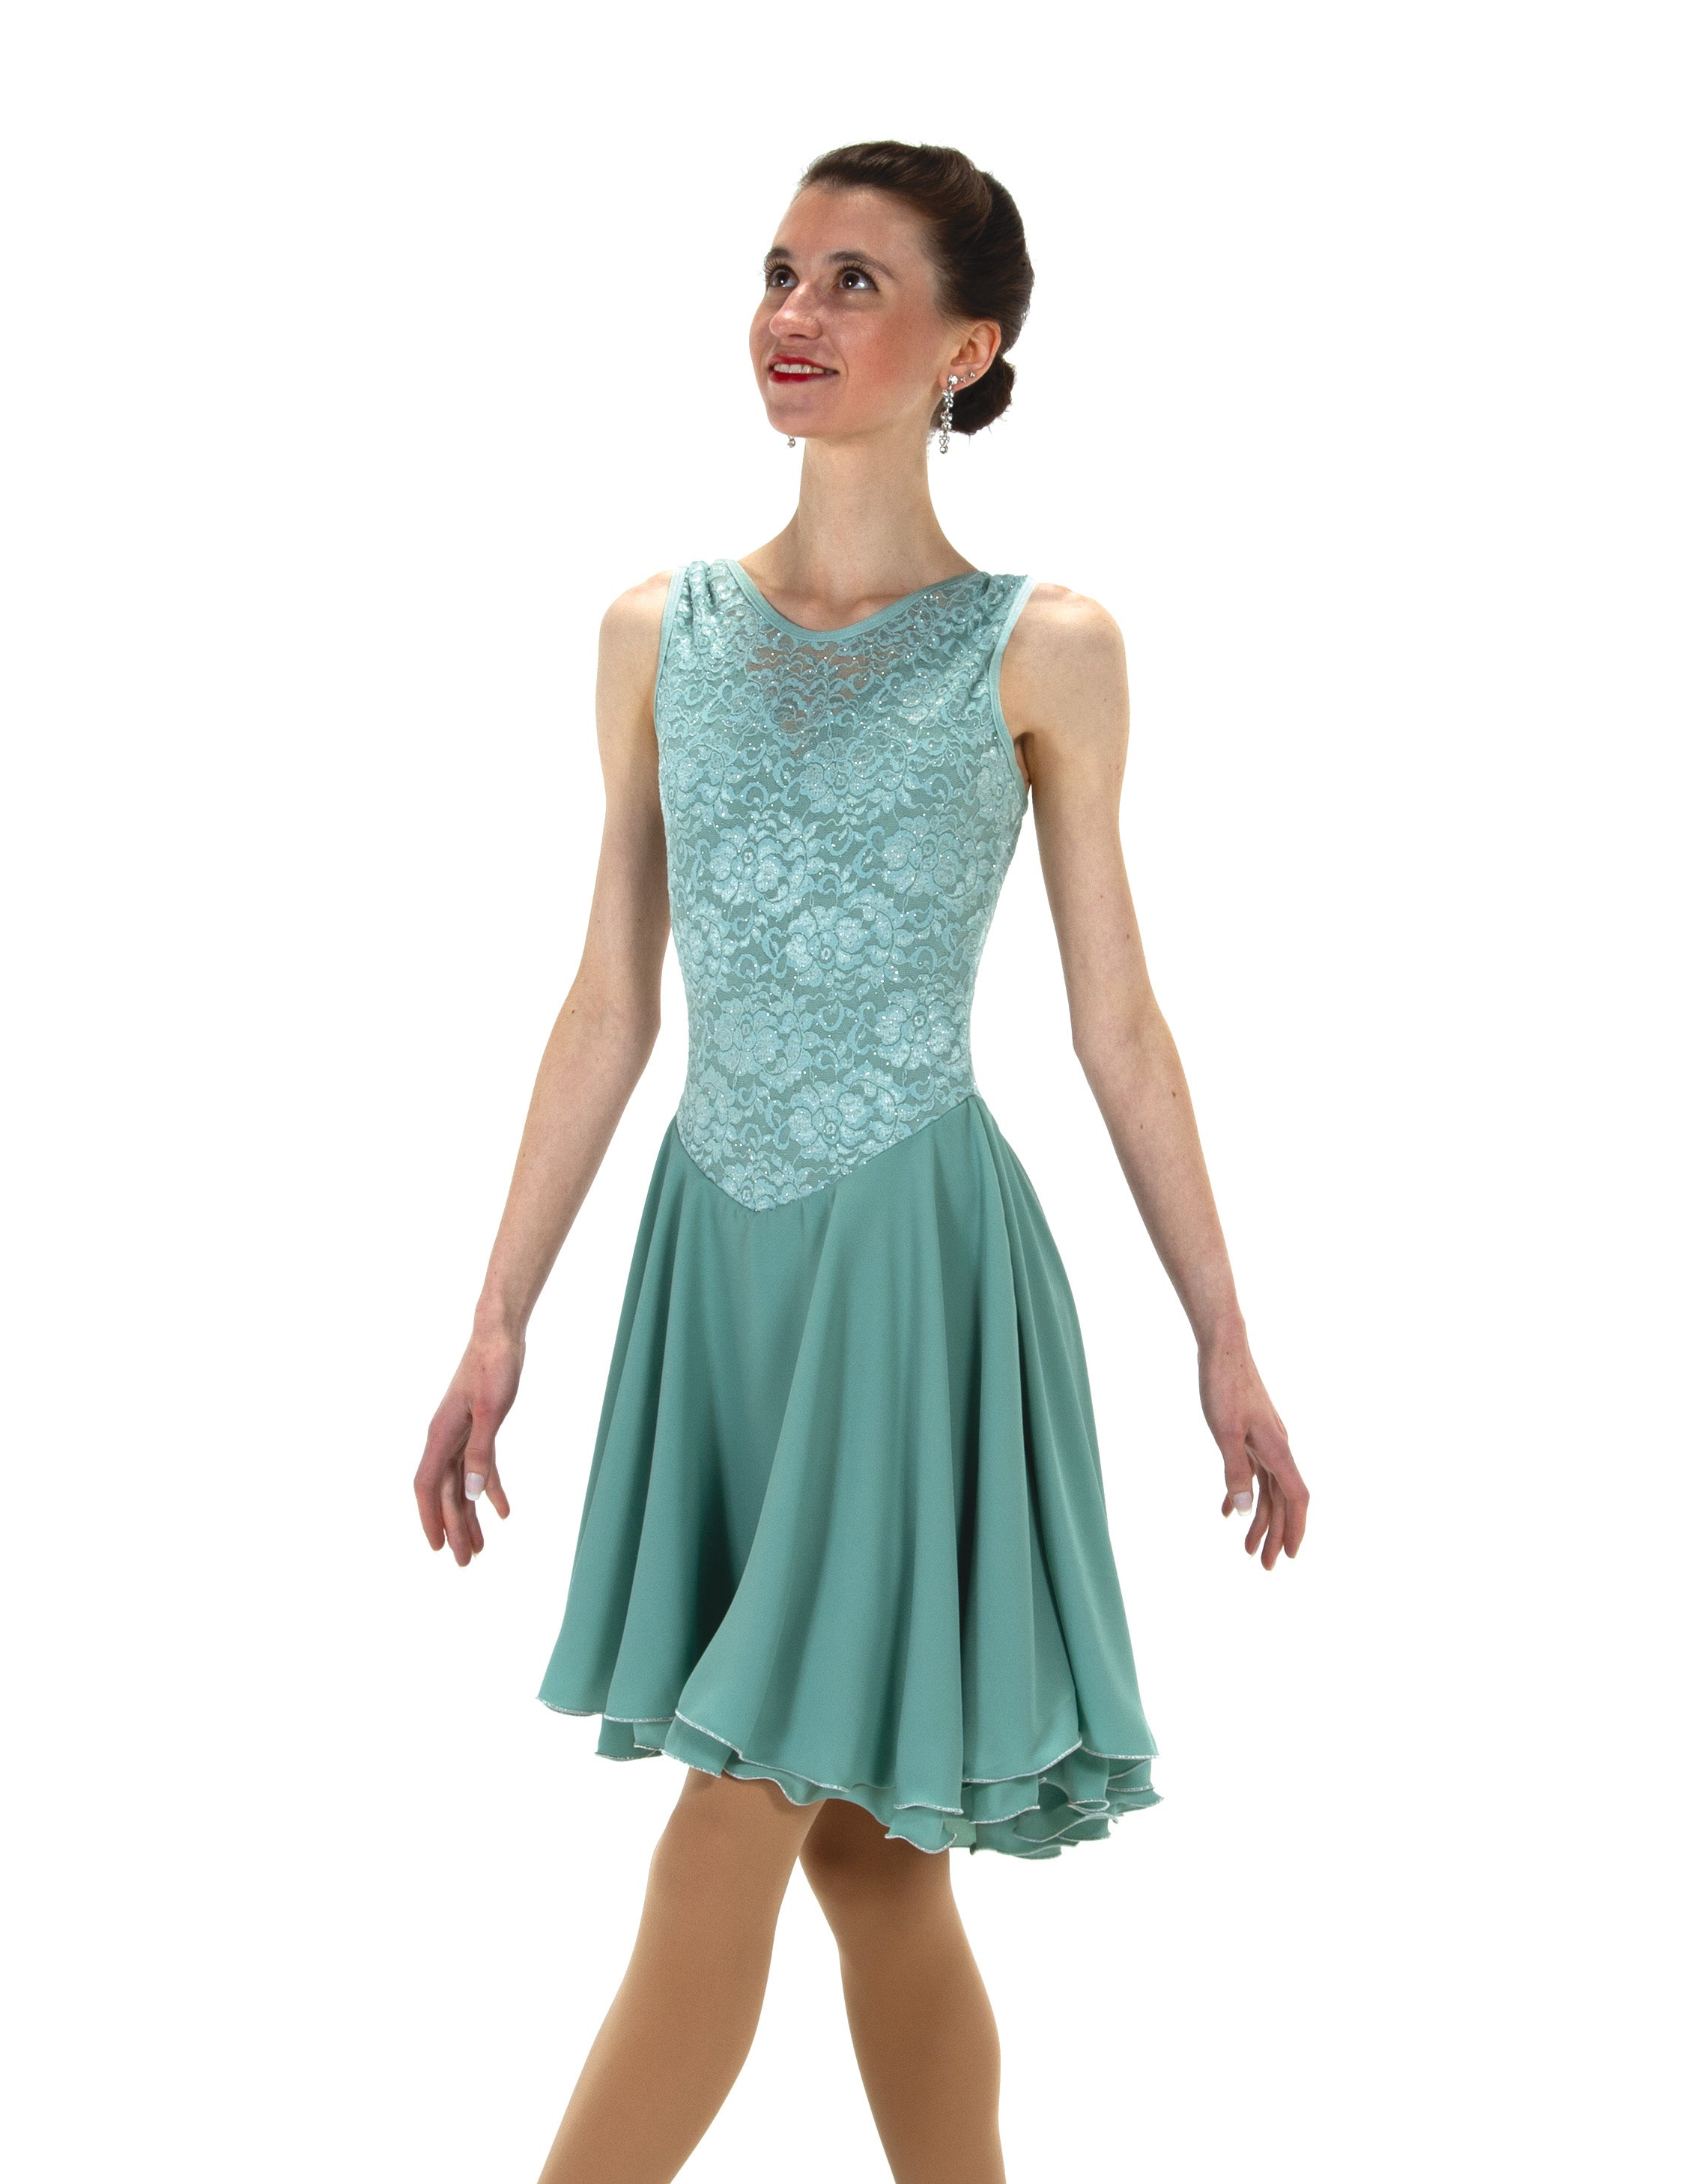 201 Willowy Waltz Dance Dress by Jerry's